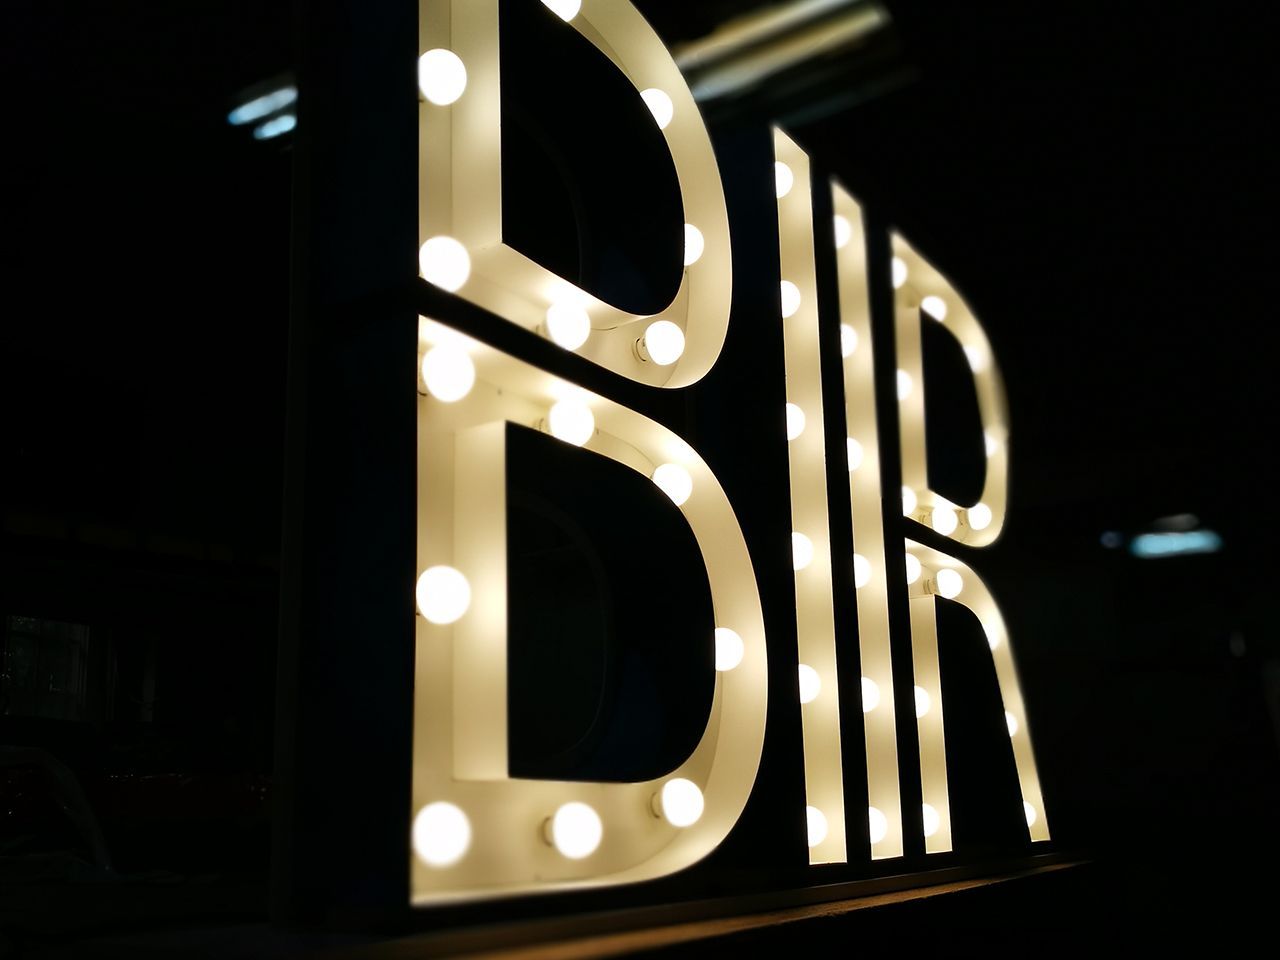 Объемные буквы с лампочками BIIR